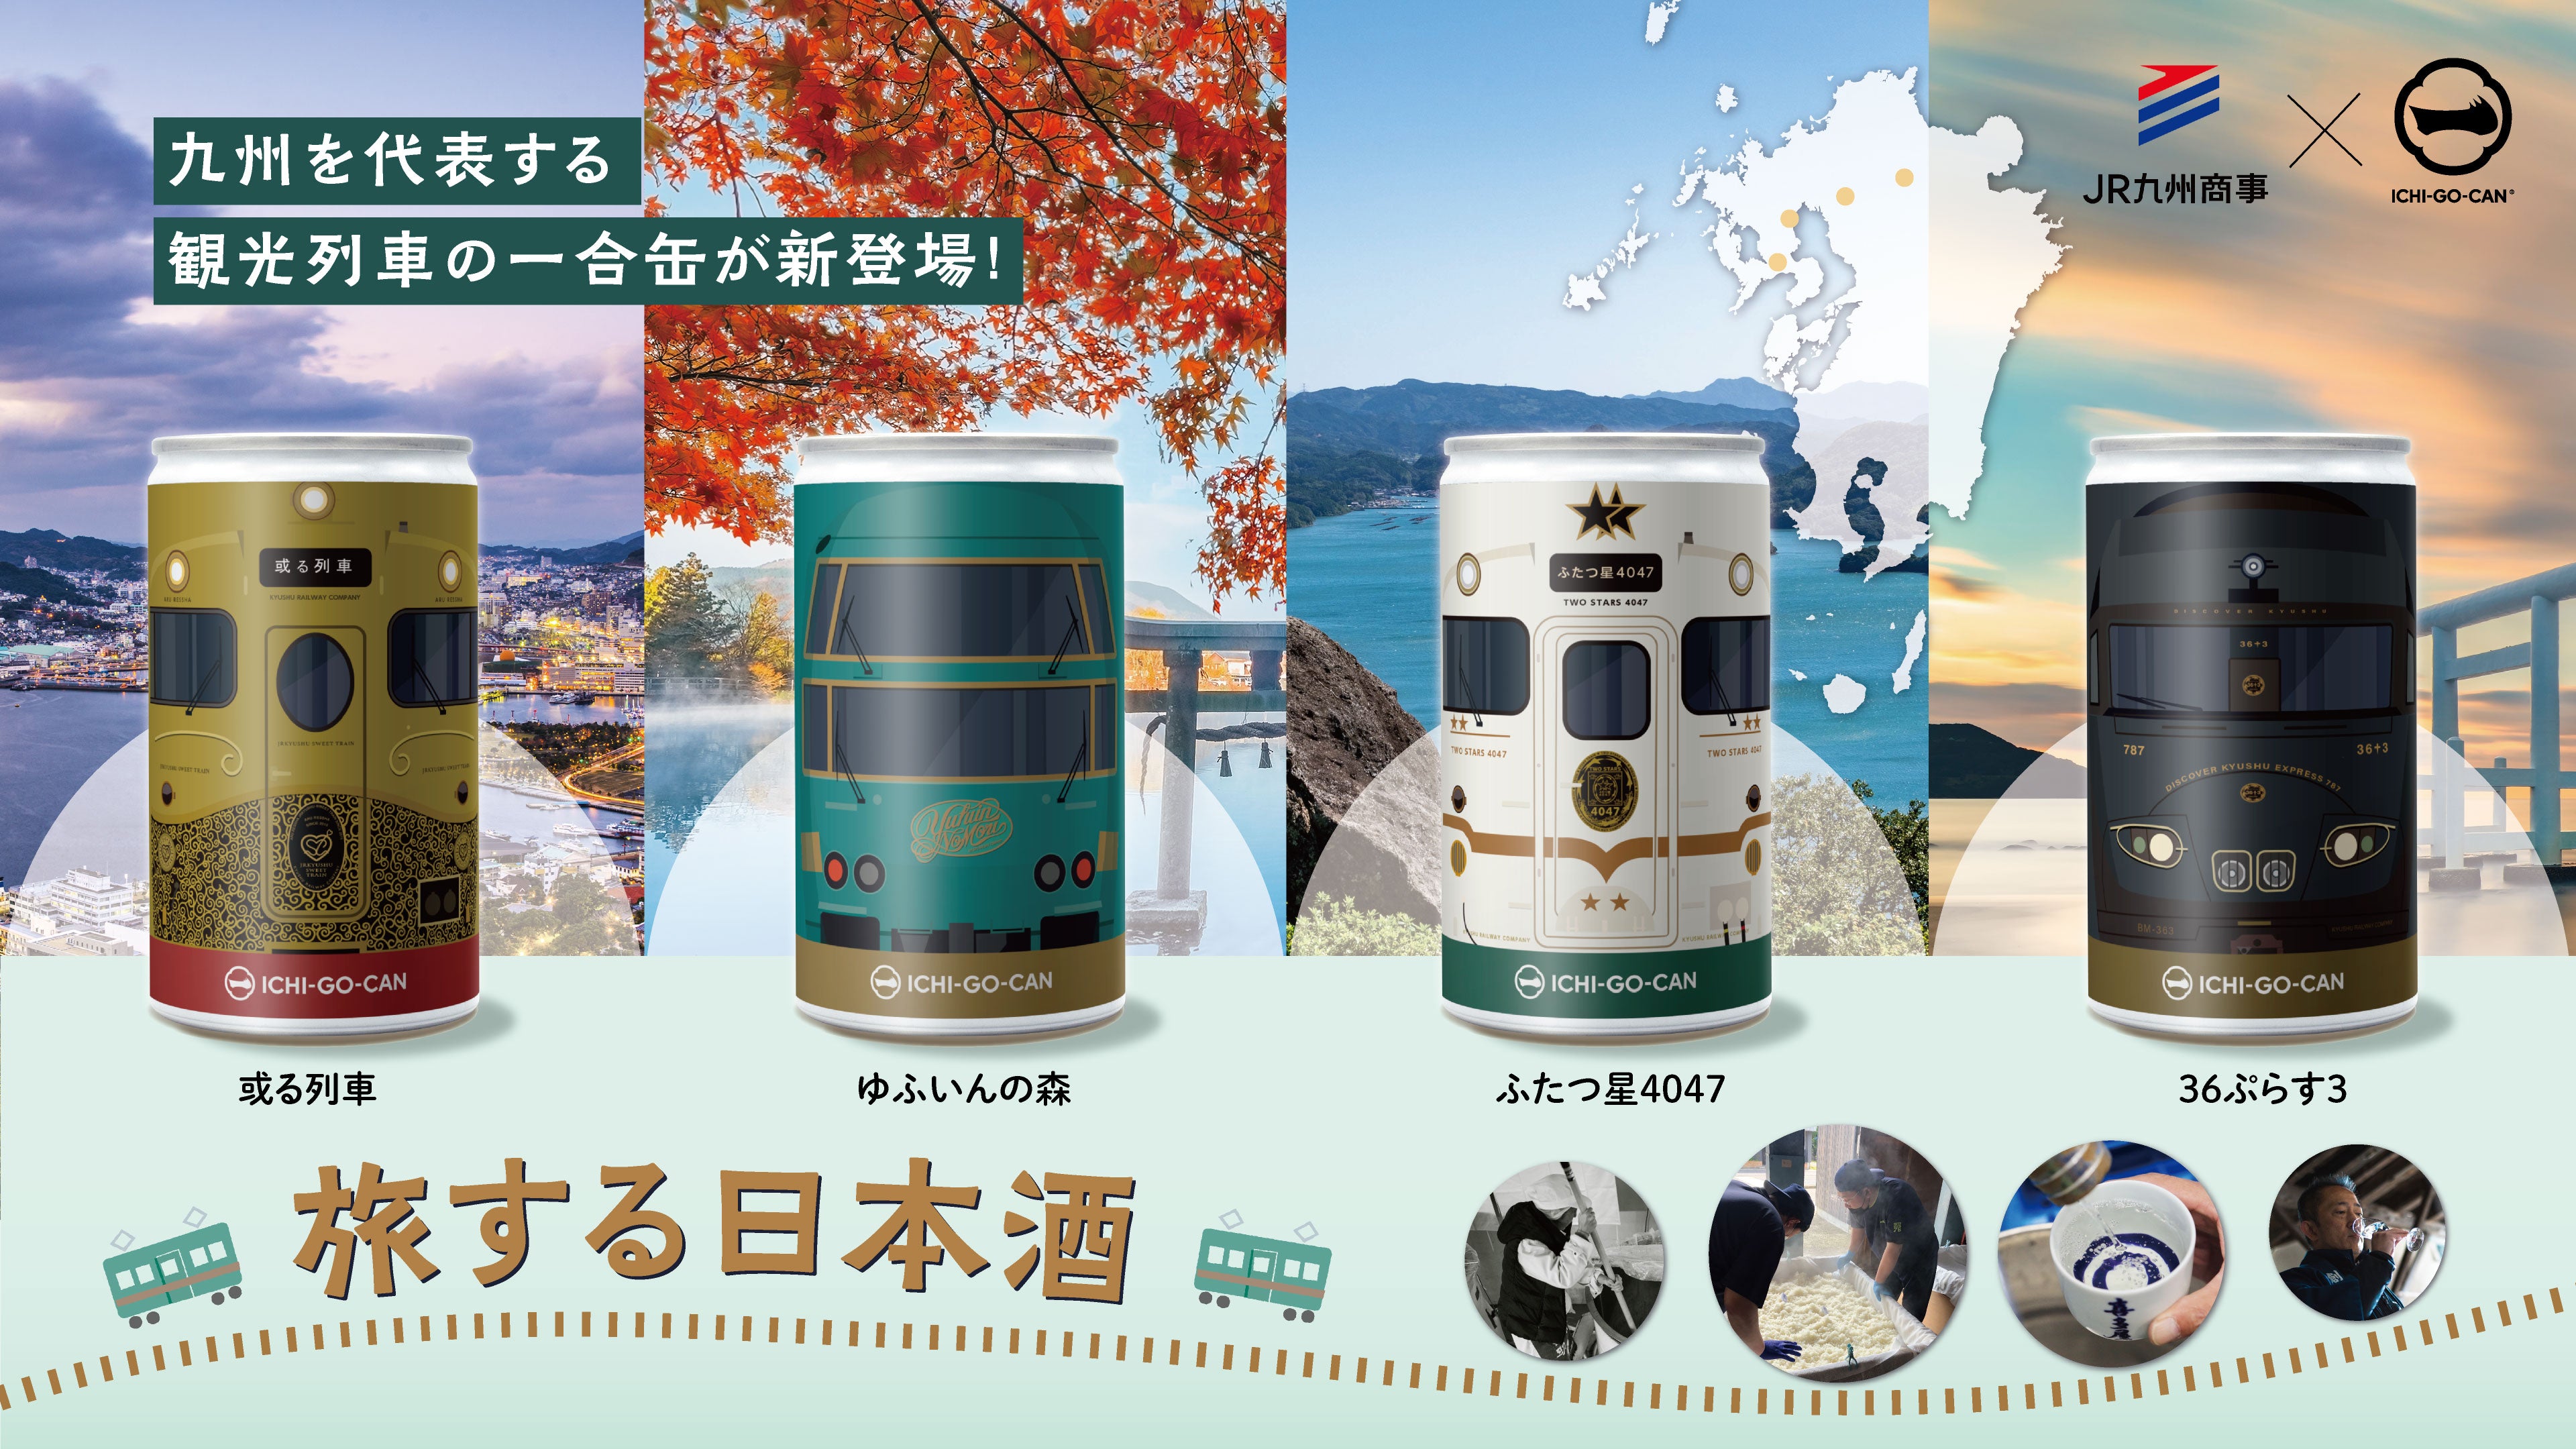 新商品】日本酒ブランド「ICHI-GO-CAN®」×JR九州グループで地域共創